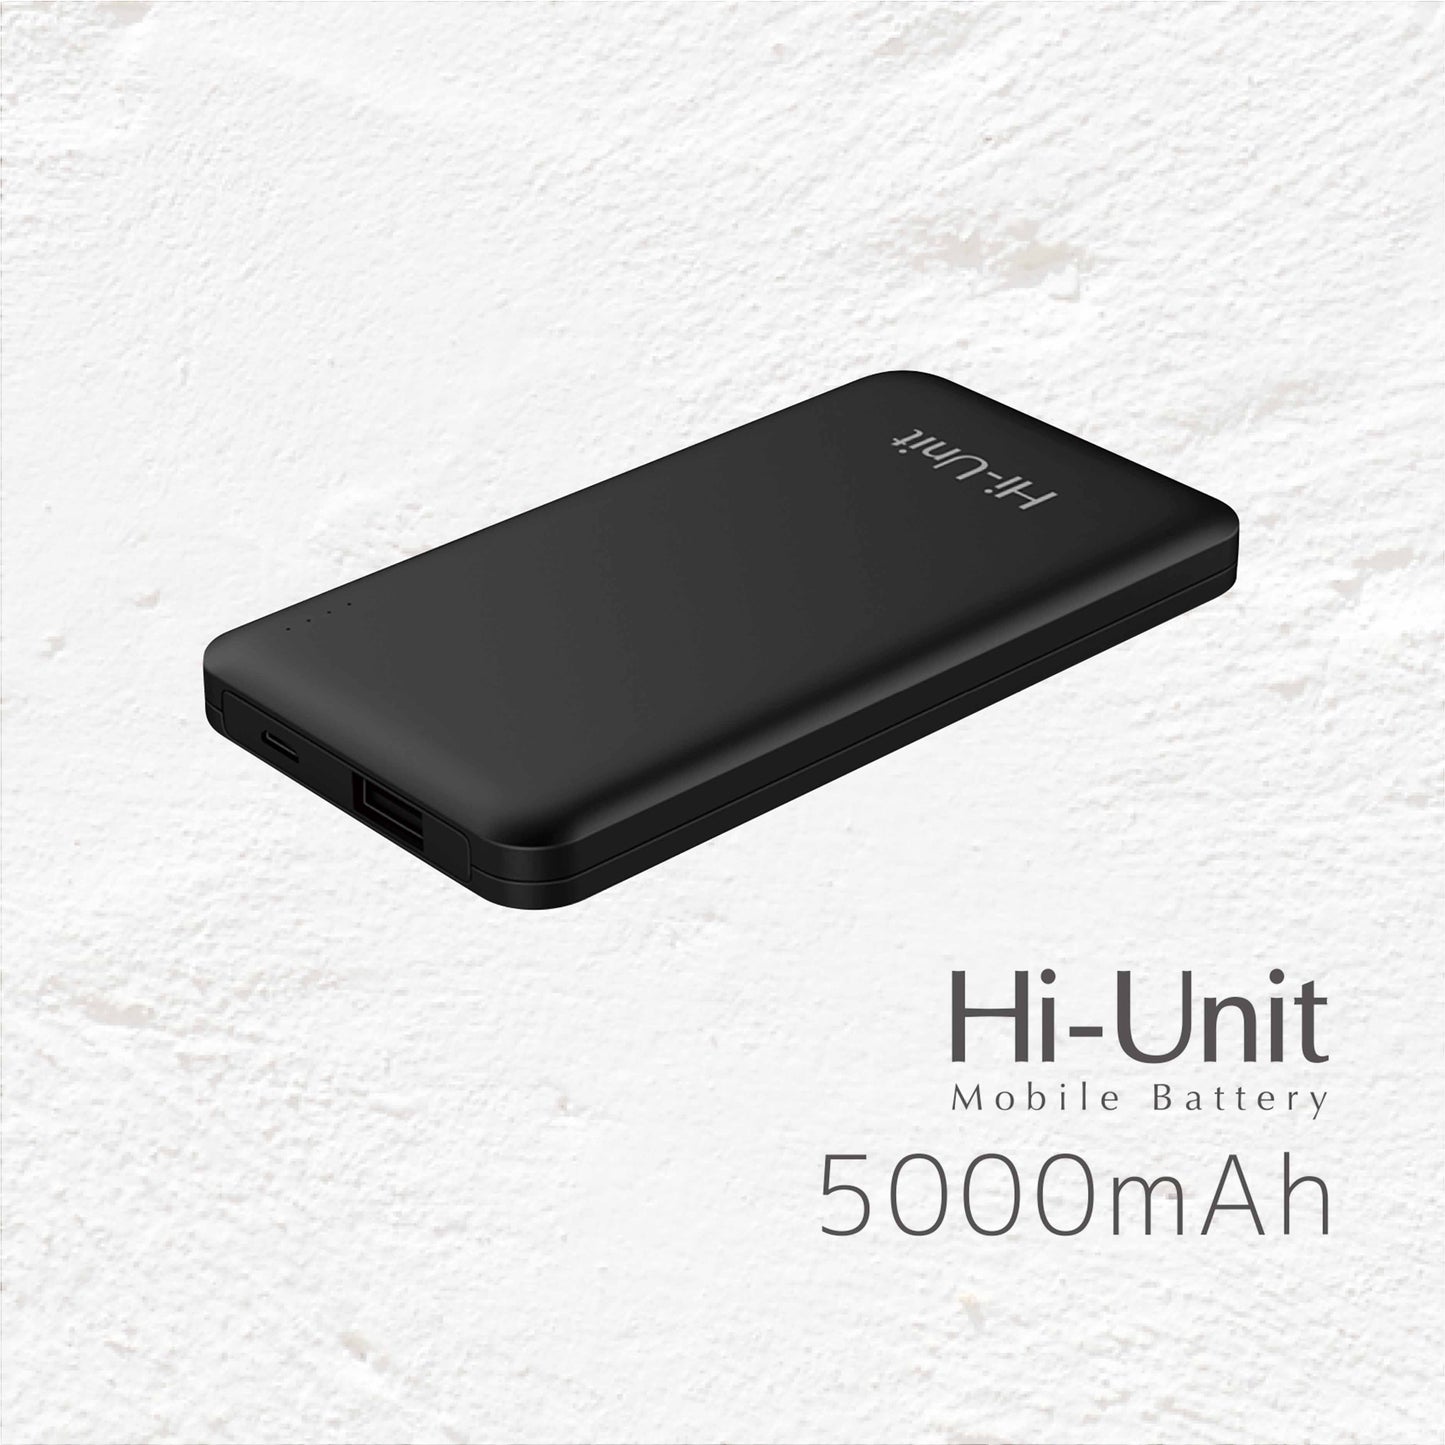 【取扱説明書】Hi-Unitモバイルバッテリー[HSE-MO5000]